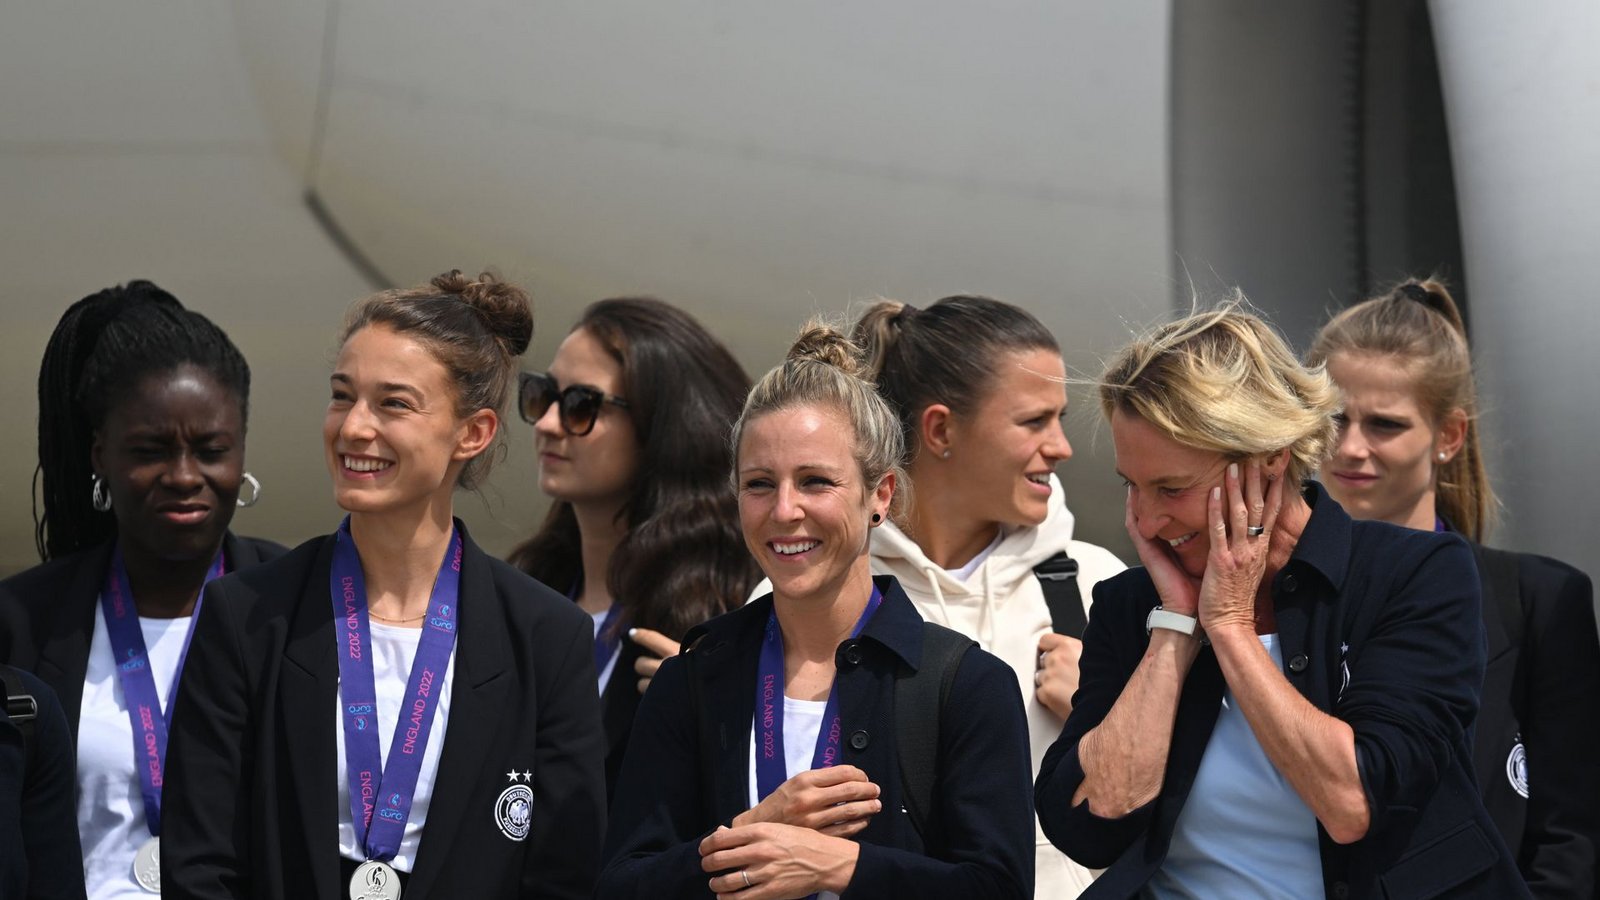 Einen Tag nach der Finalniederlage gegen England konnten die Spielerinnen schon wieder lachen.Foto: dpa/Arne Dedert